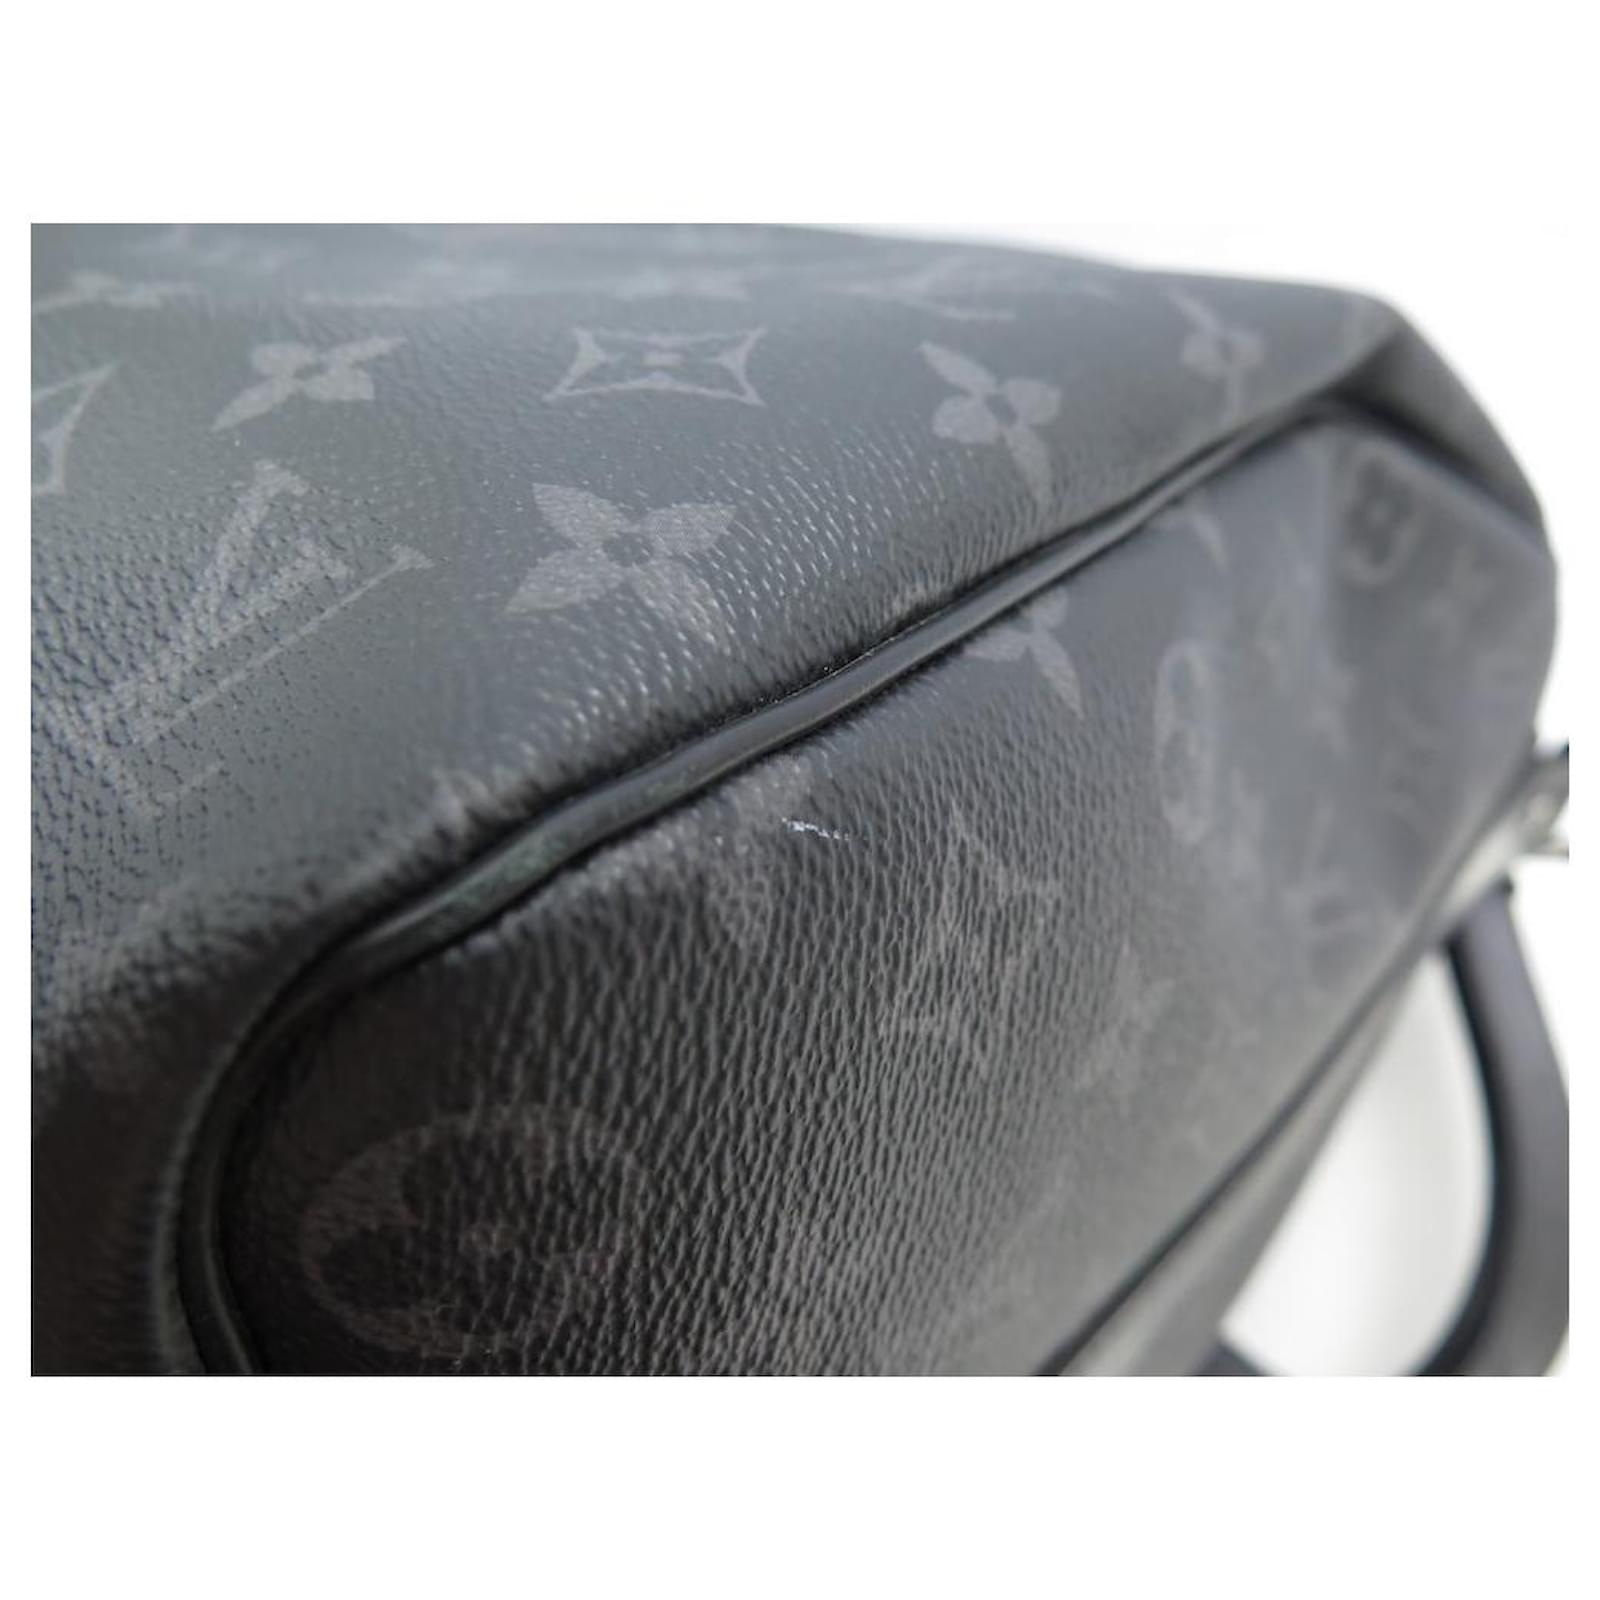 Comprar Bolso de viaje Louis Vuitton Keepall 45 Monogram E352738